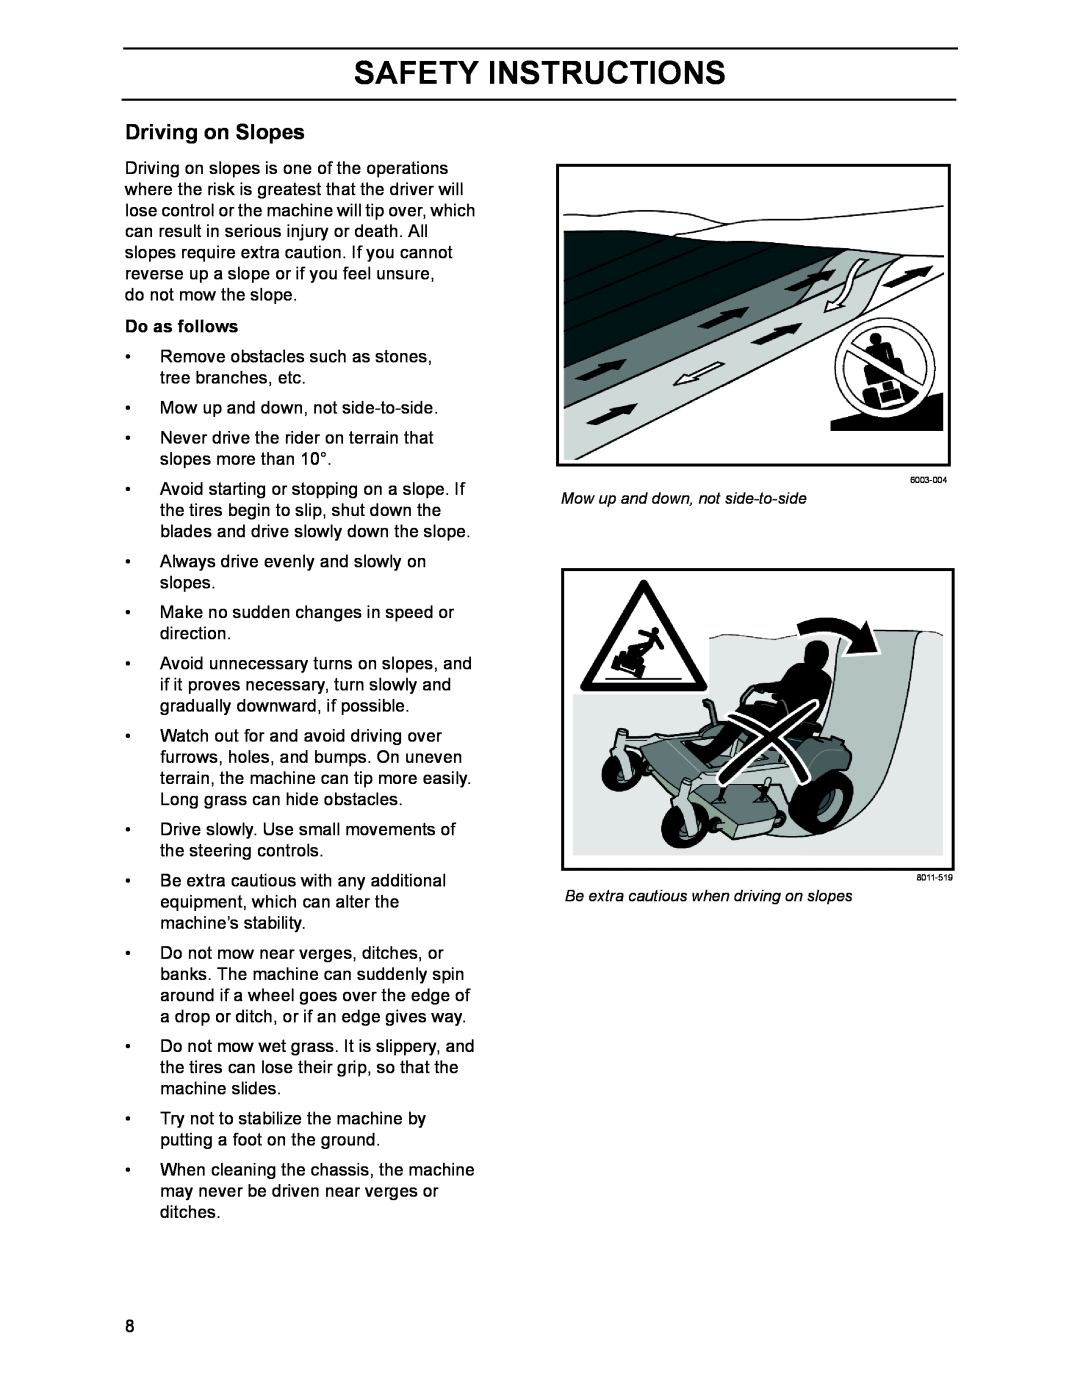 Husqvarna BZ6127D, 968999218, 968999214, 968999216, BZ7234D, BZ6134D Driving on Slopes, Safety Instructions, Do as follows 